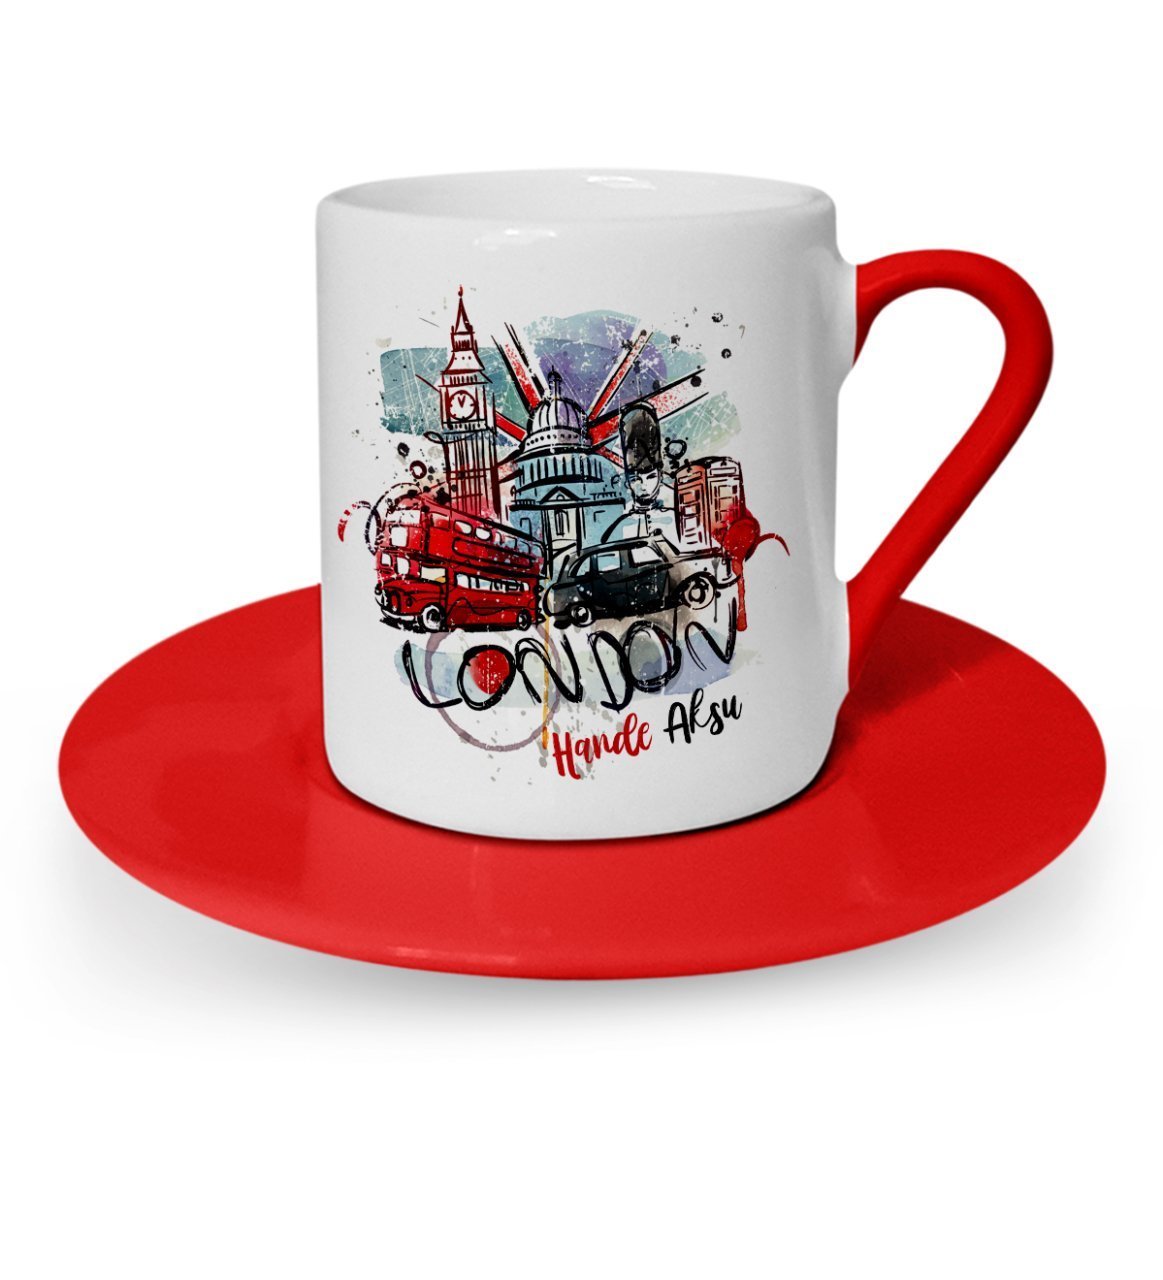 Kişiye Özel London Tasarımlı Kırmızı Türk Kahvesi Fincanı - 1